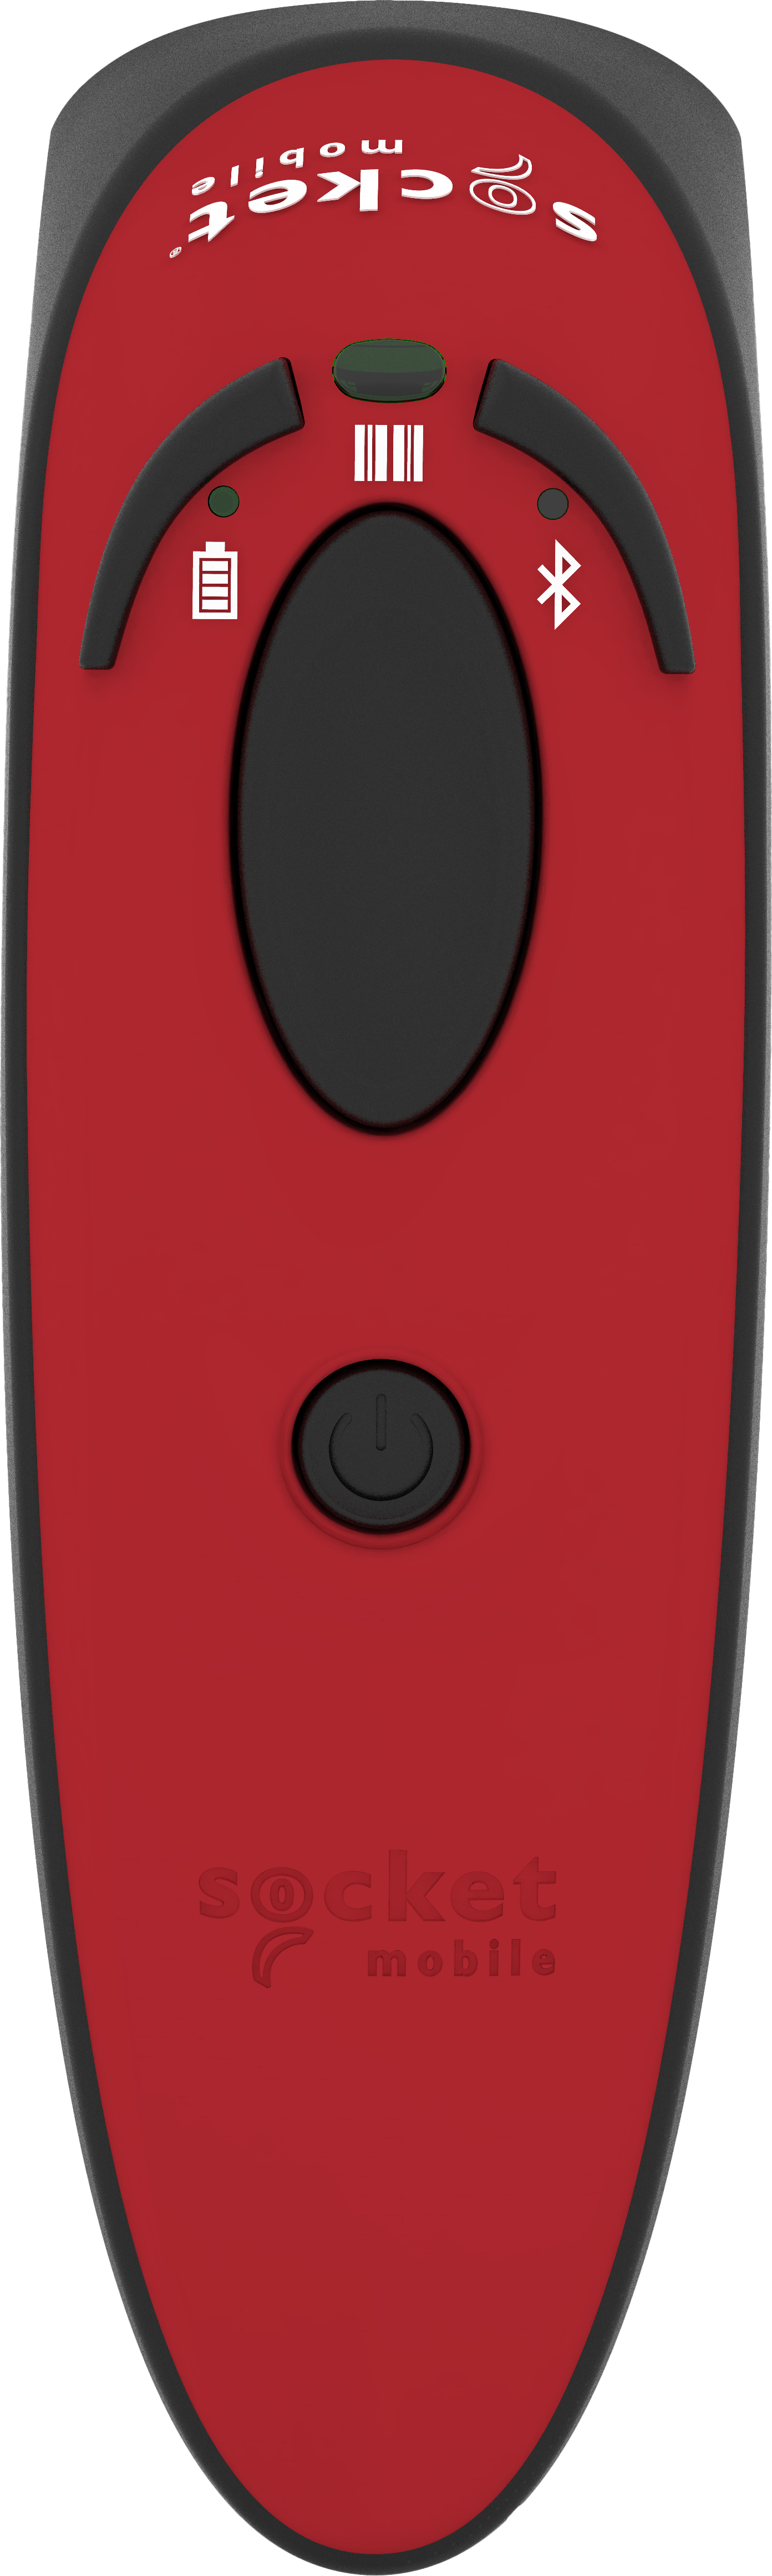 専門店 Socket Mobile, Durascan D700, Imager Scanner, 1D Barcode Gray スキャナー 